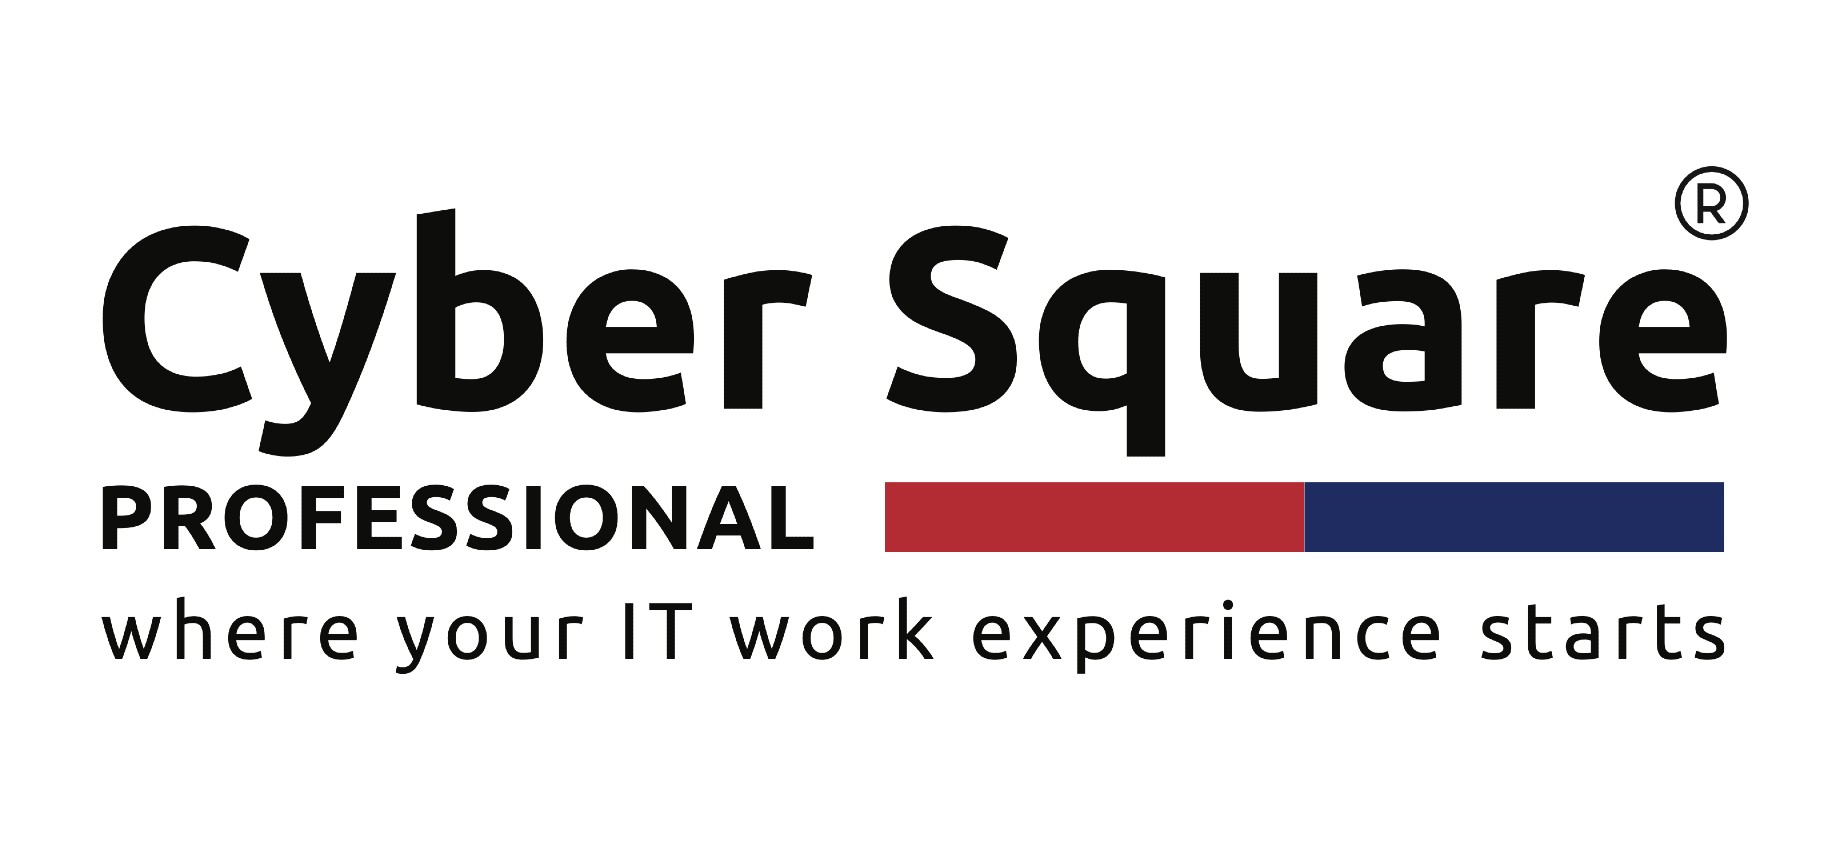 Cyber Square Pro